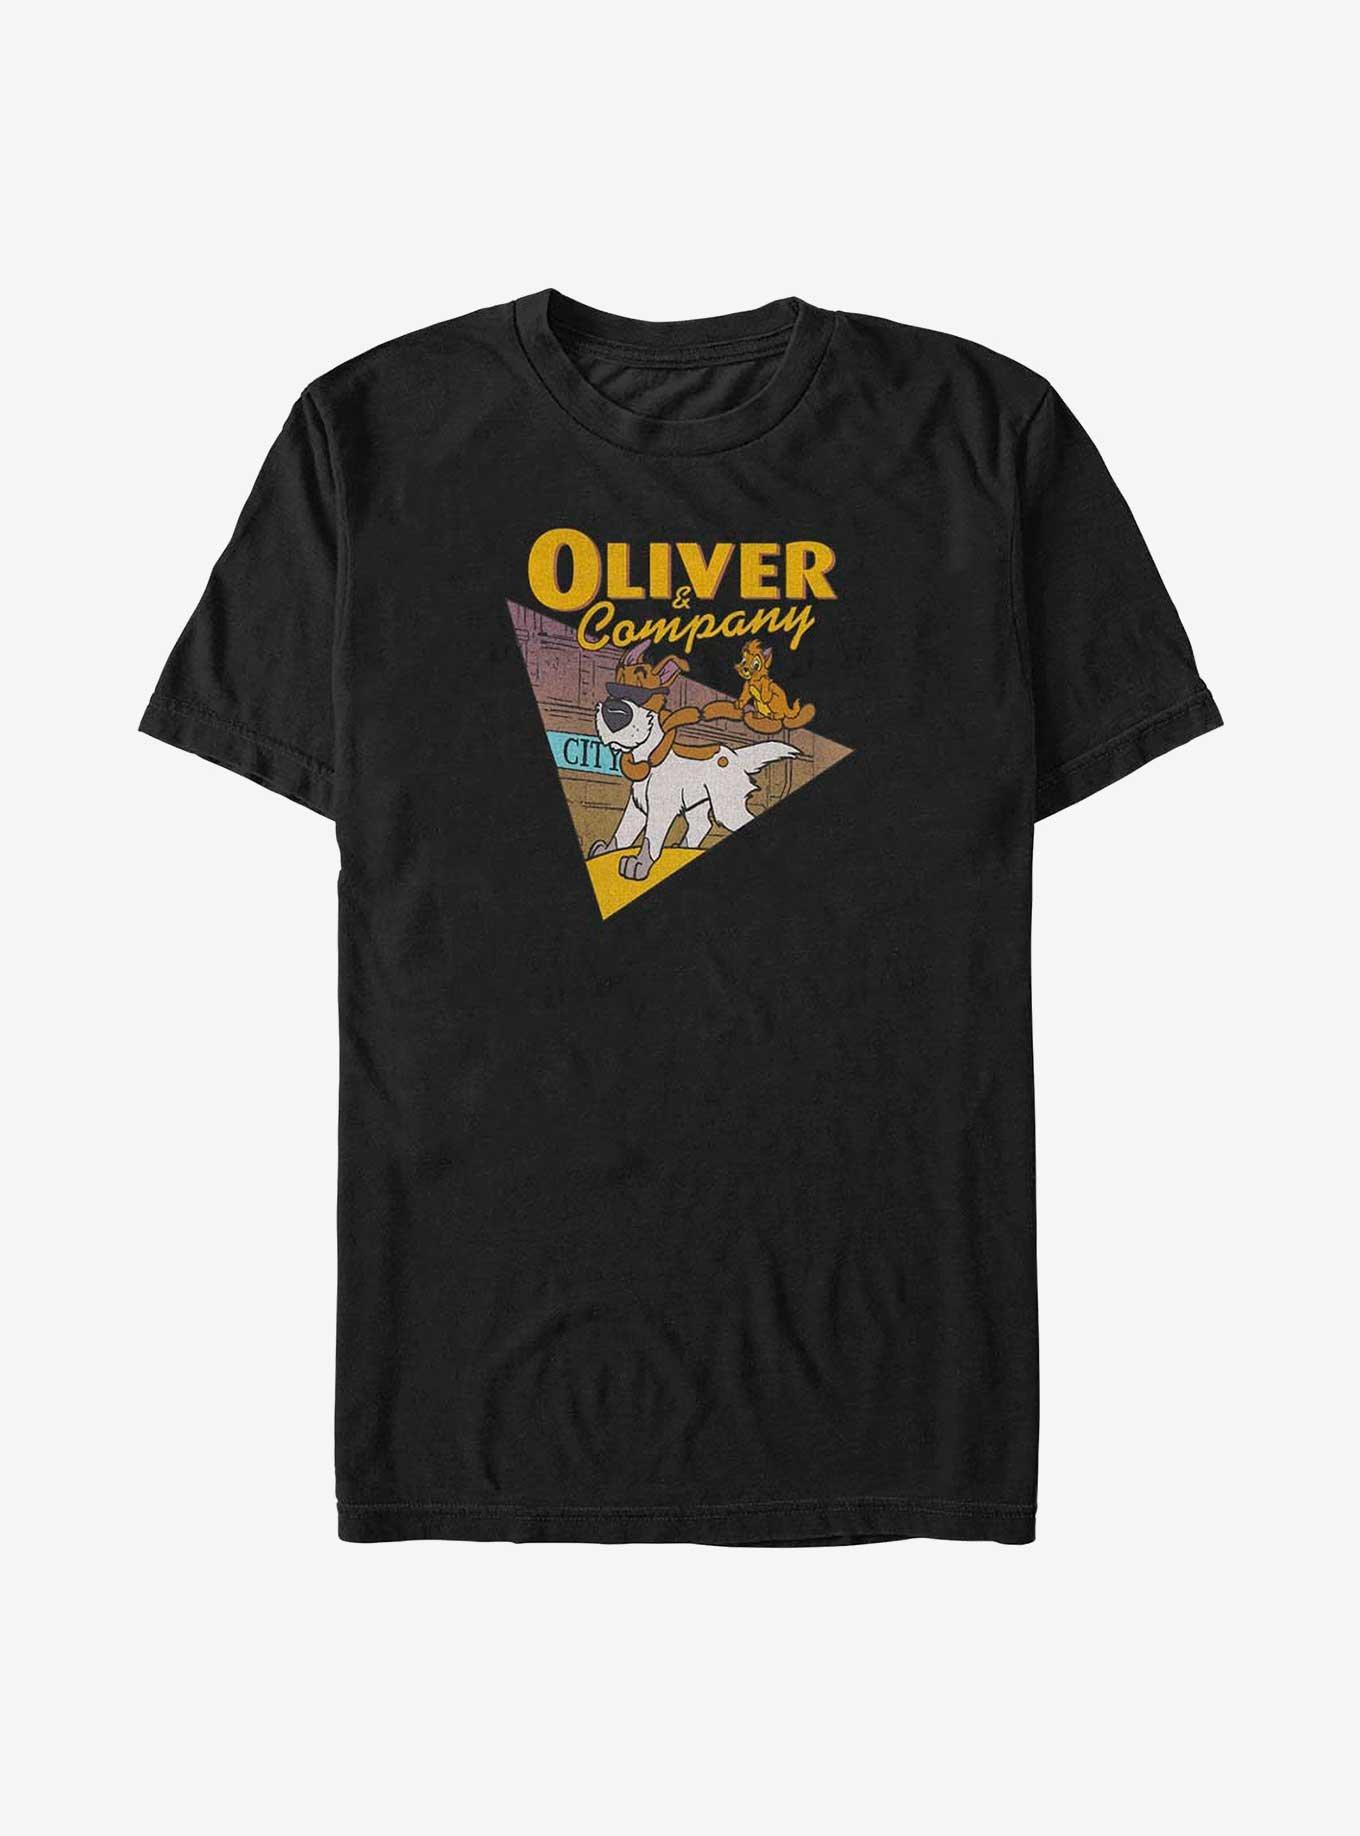 Disney Oliver & Company Hot Dog Run Big & Tall T-Shirt, BLACK, hi-res